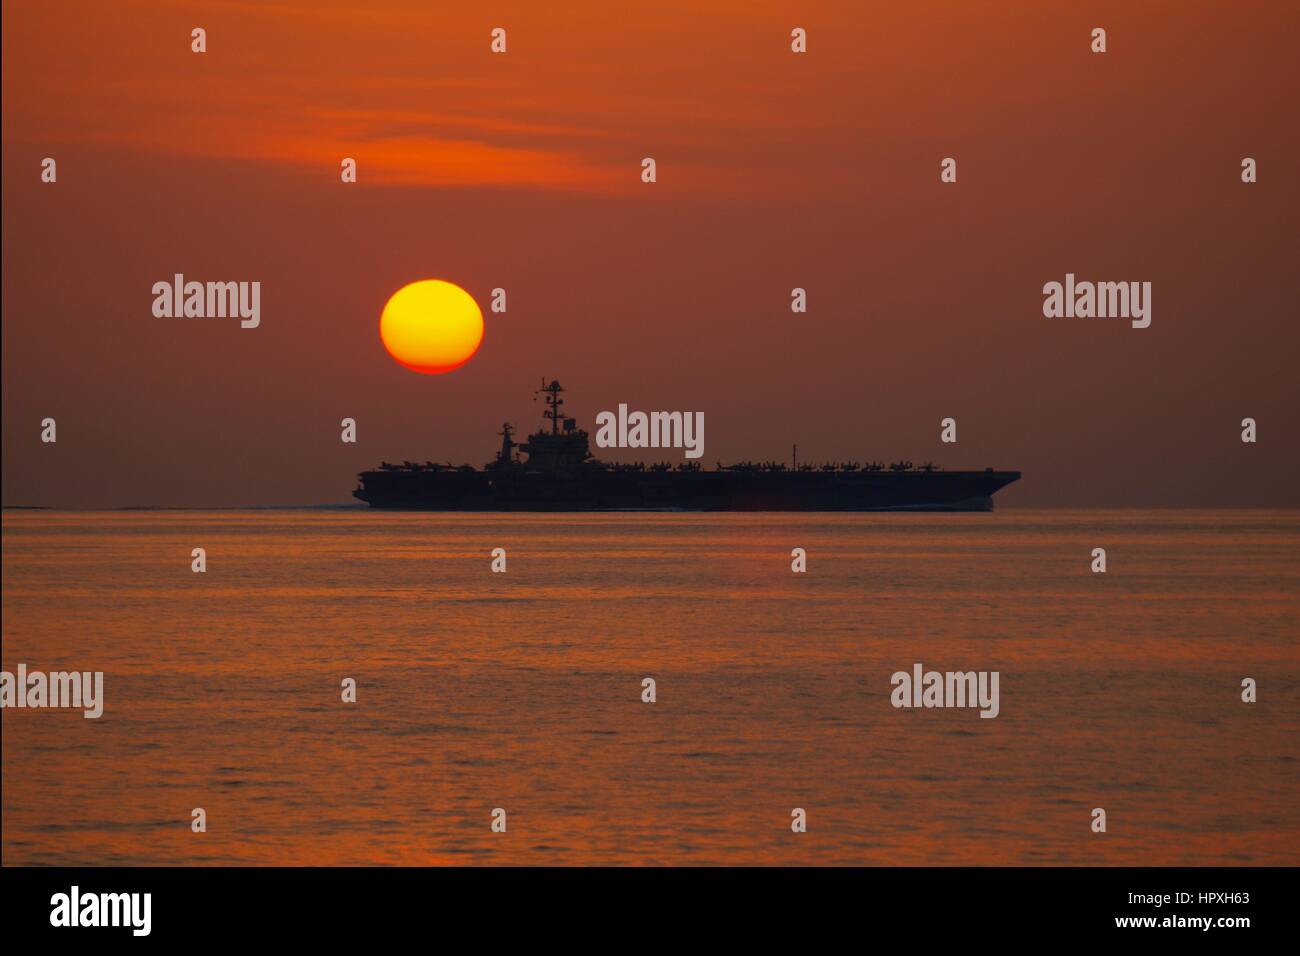 La Nimitz-class portaerei USS John Stennis C funziona in mare Arabico durante il tramonto, Mare Arabico, 5 gennaio 2012. Immagine riprodotta per gentile concessione di US Navy Yeoman 3rd Class James Stahl. Foto Stock